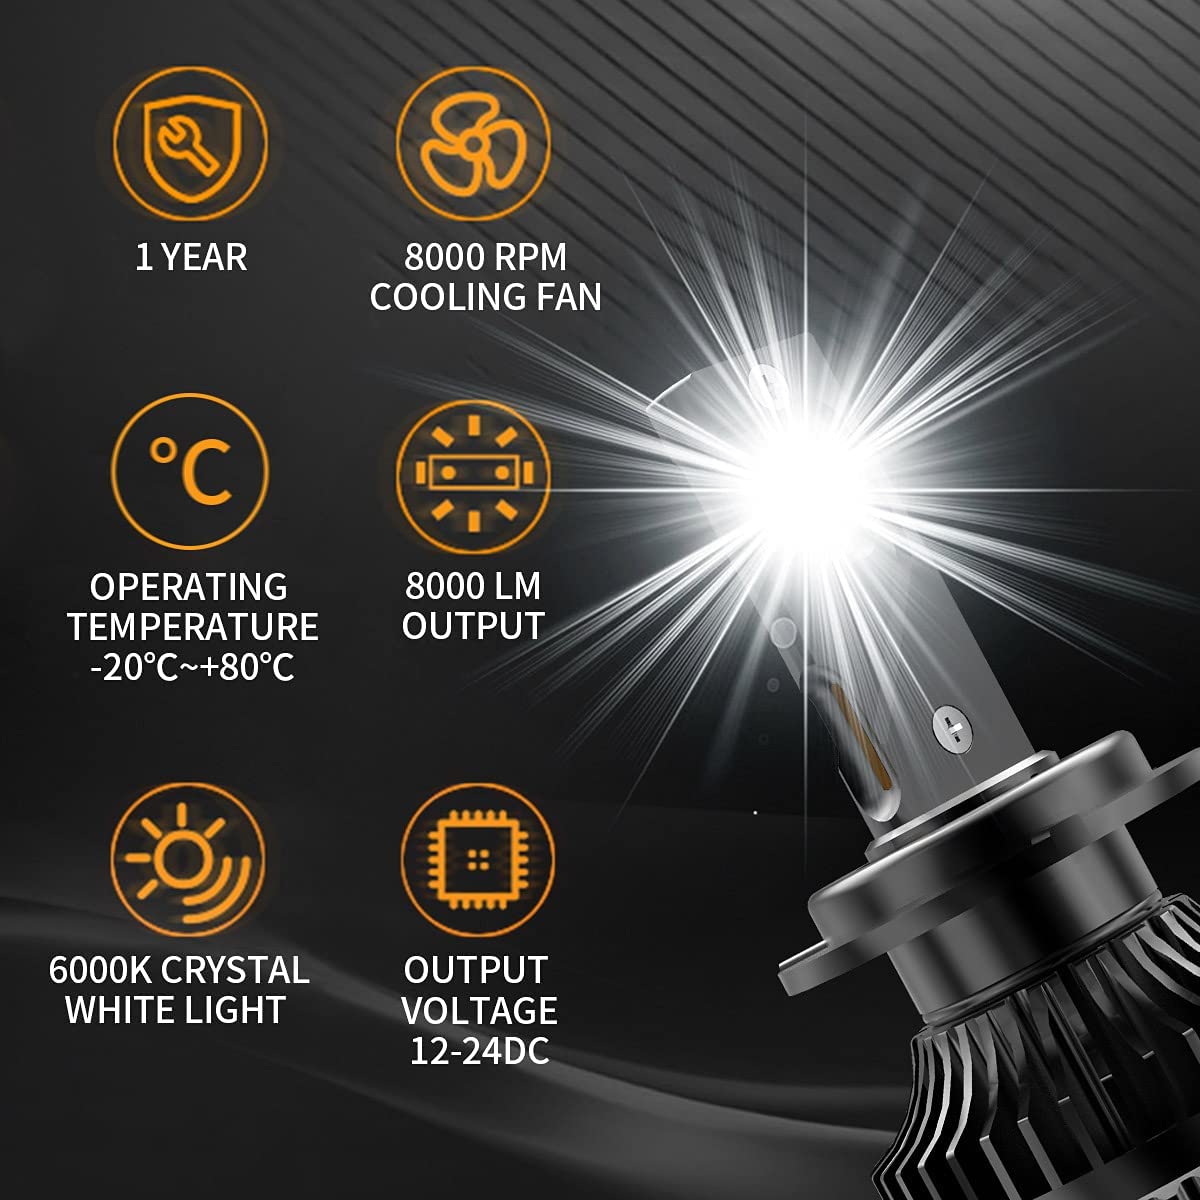 [Bulbs Included] VLAND 12-19 GT86 / 13-16 FR-S / 13-19 BRZ Headlights + D2S LED Bulbs